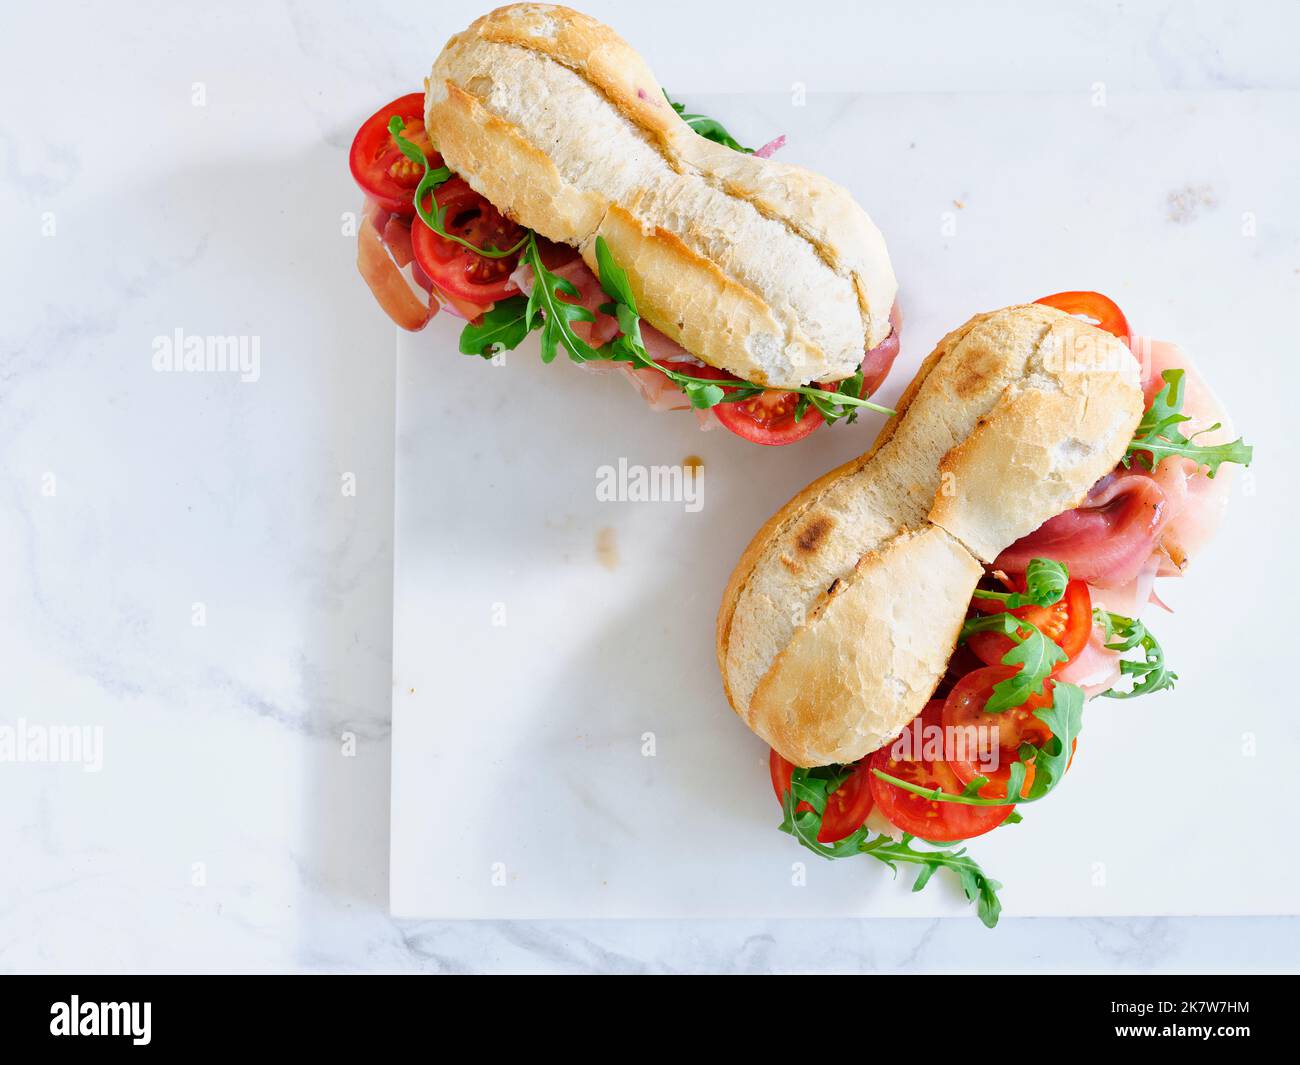 Plat avec de savoureux sandwiches au jambon, mozarella et légumes frais. Concept déjeuner simple. Espace de texte Banque D'Images